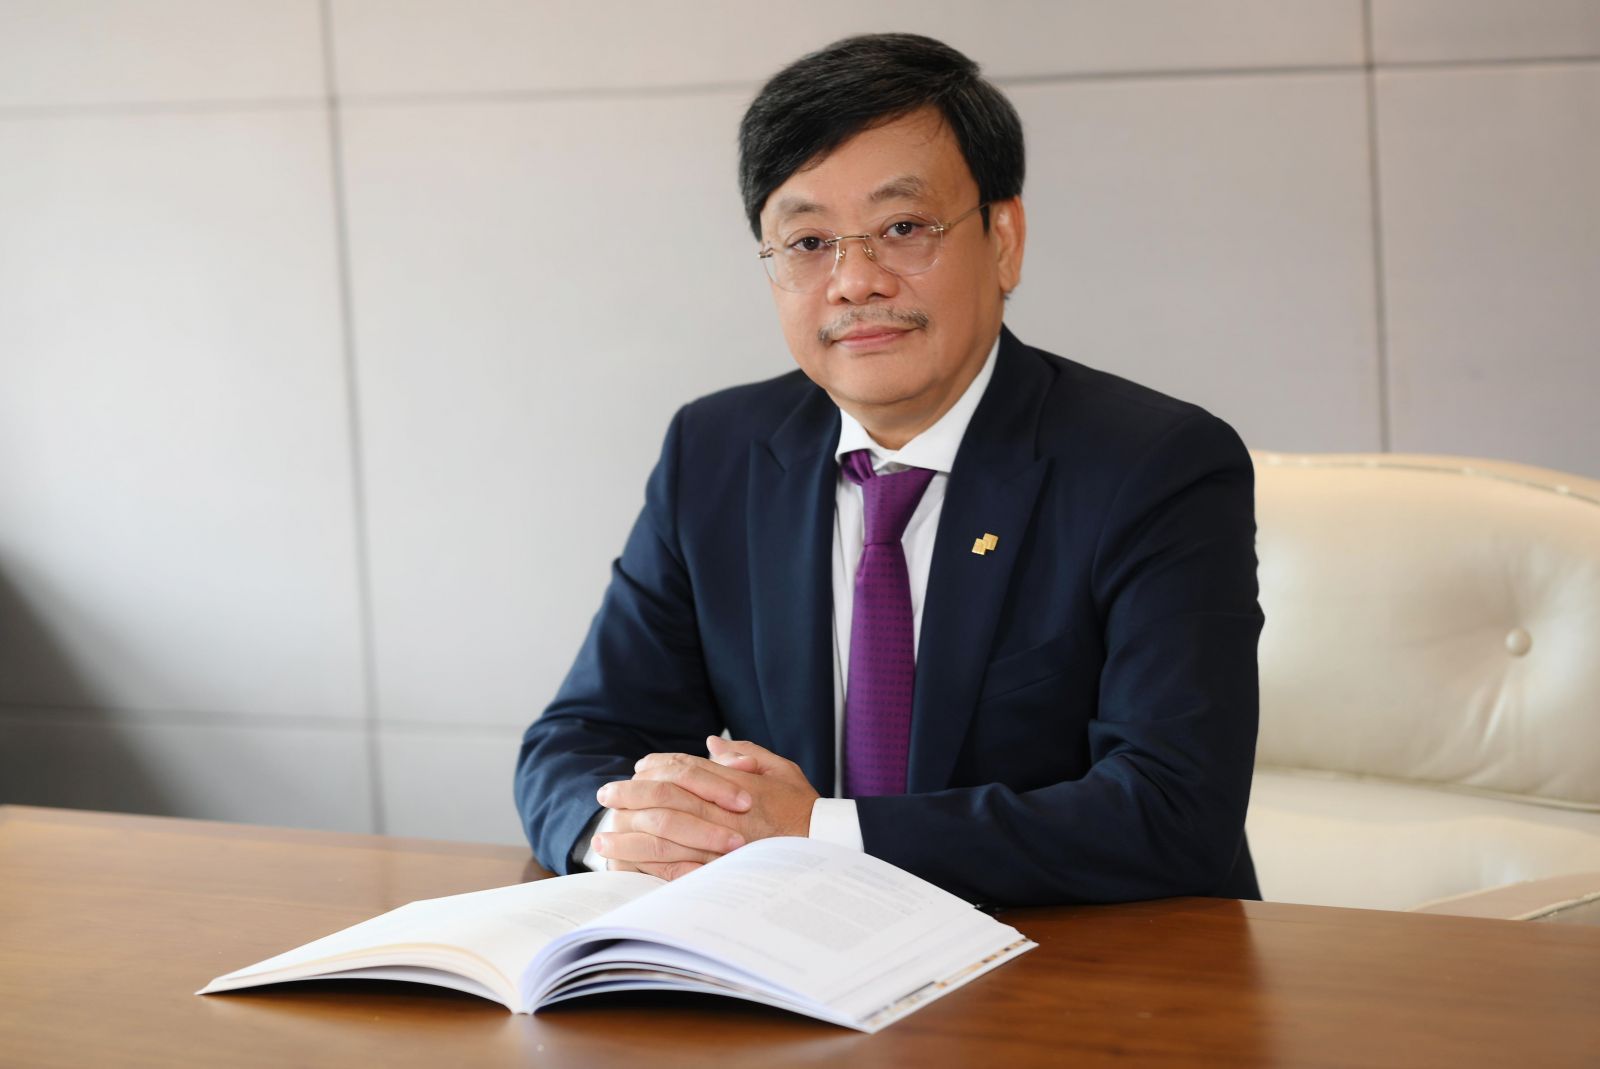 Chủ tịch Hội đồng Quản trị Masan Group, Tiến sĩ Nguyễn Đăng Quang